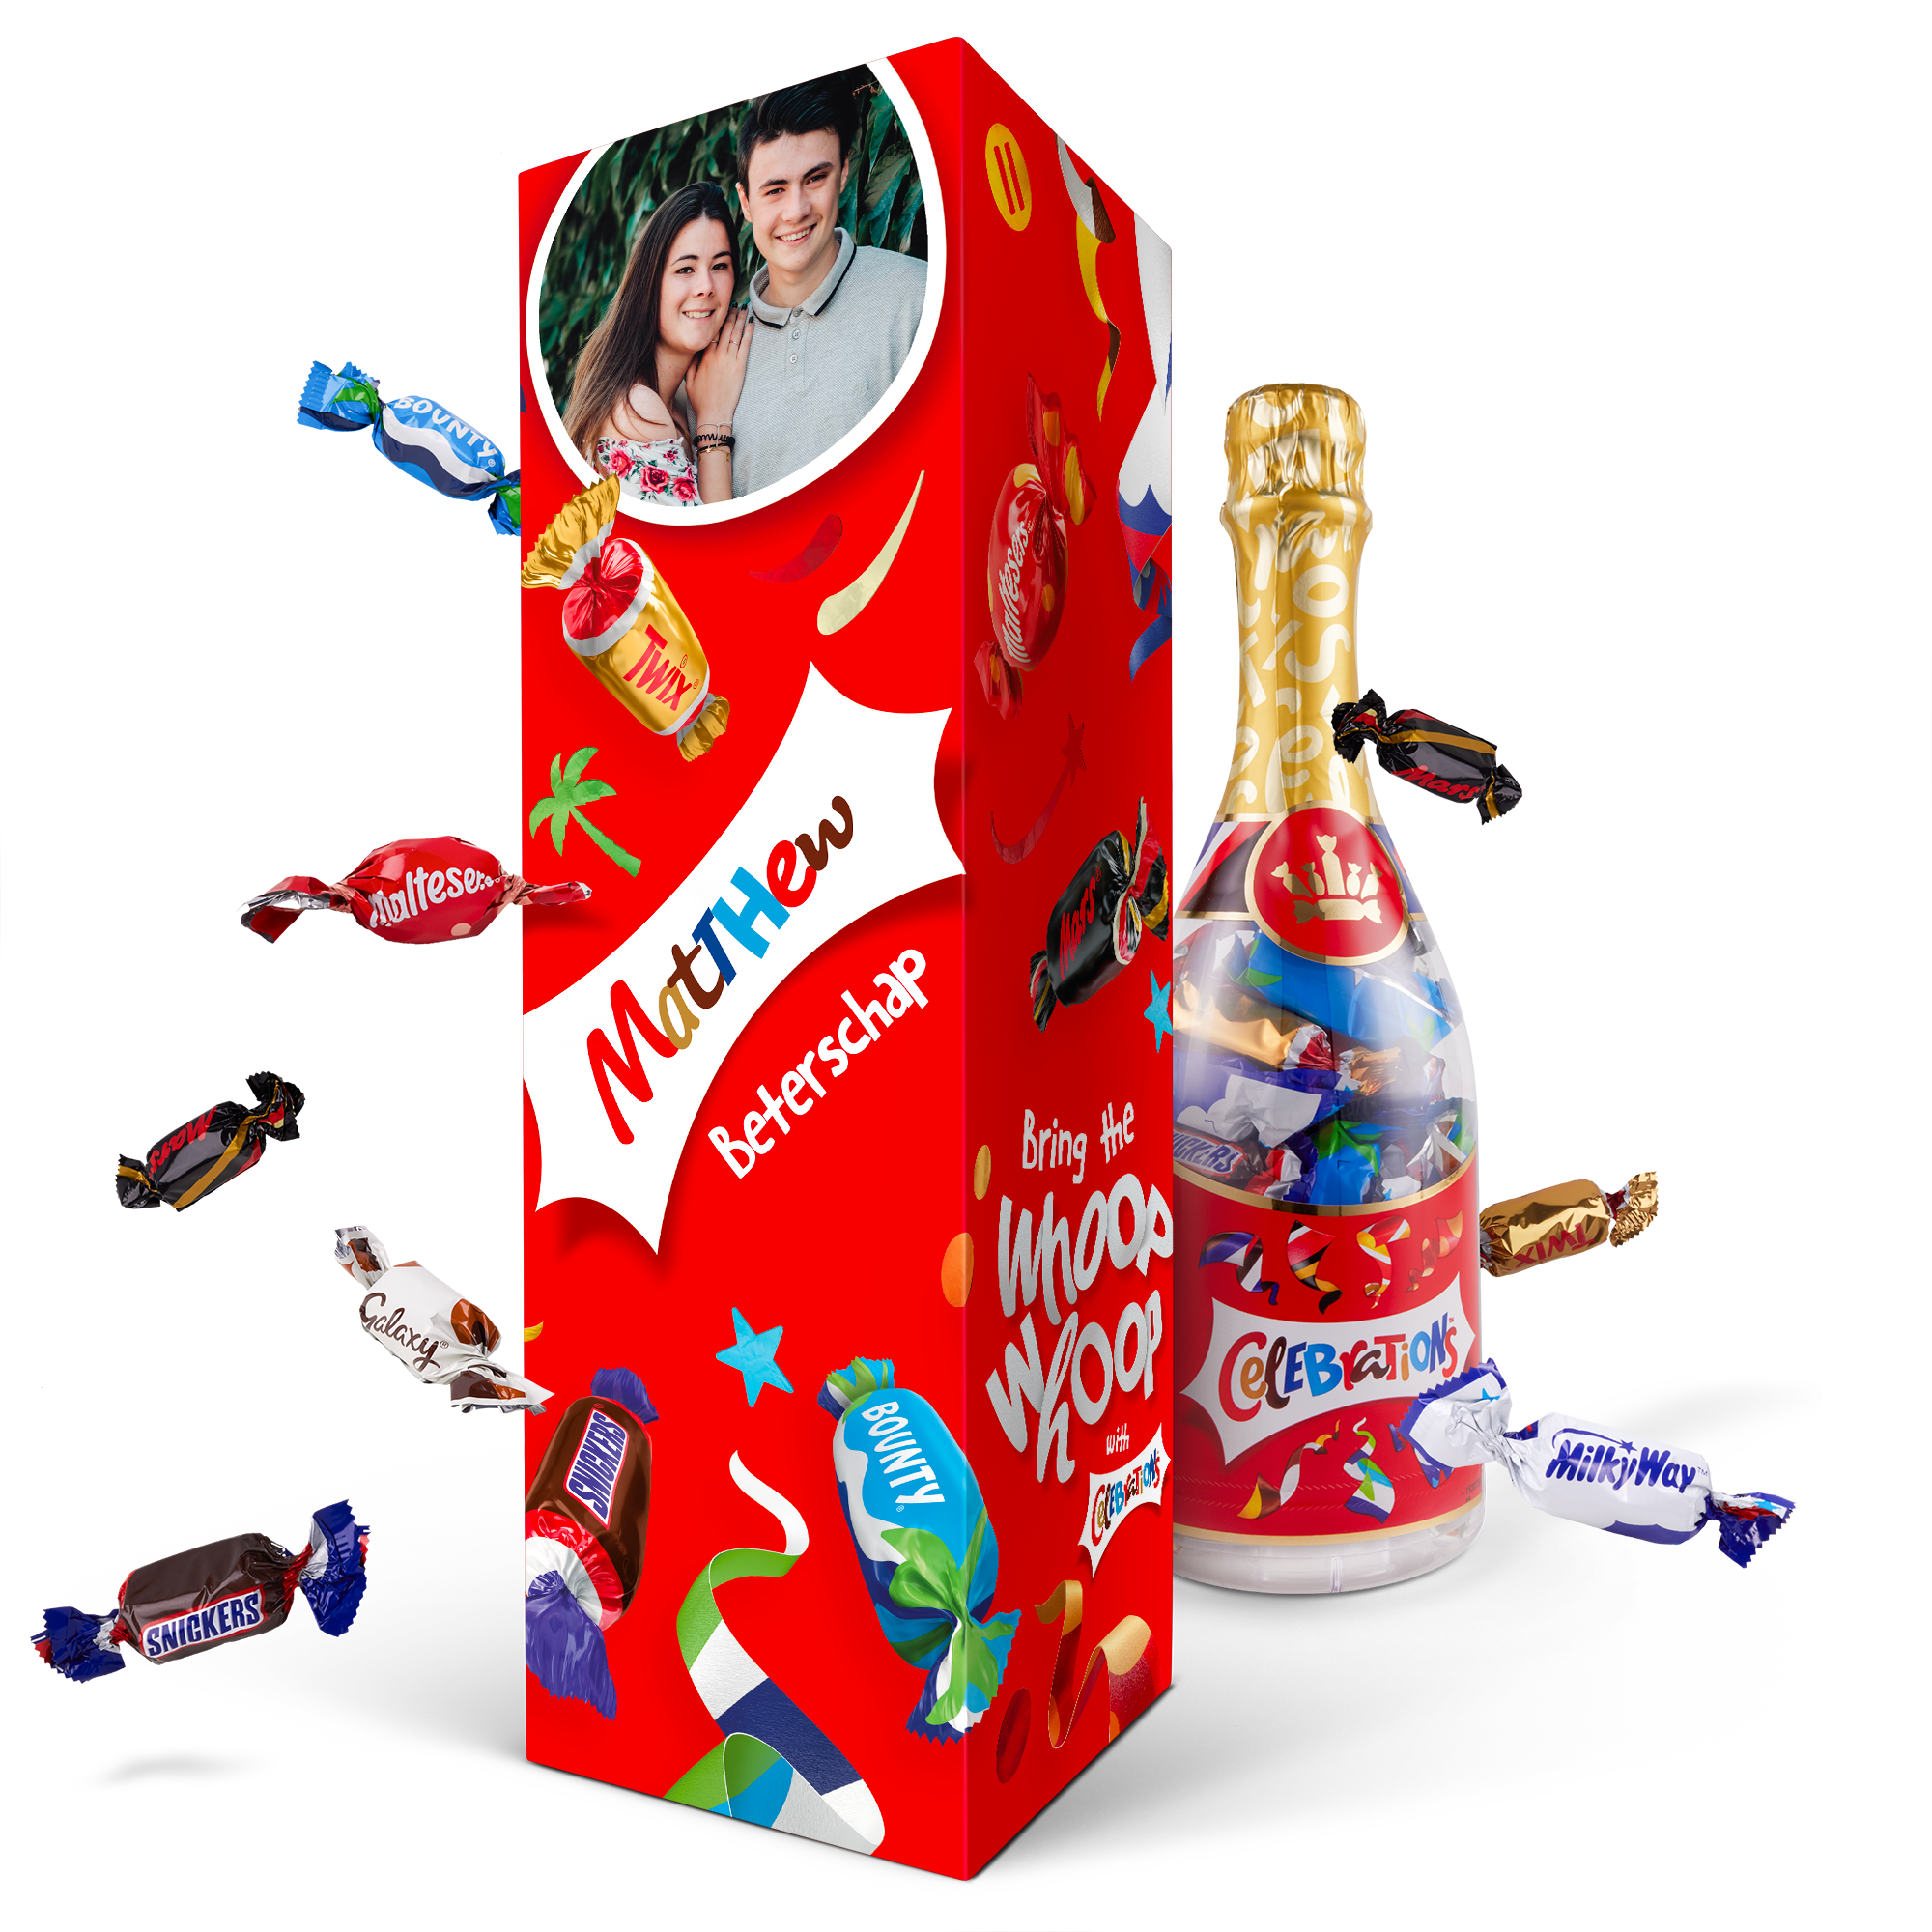 Celebrations chocolade fles in gepersonaliseerde giftbox